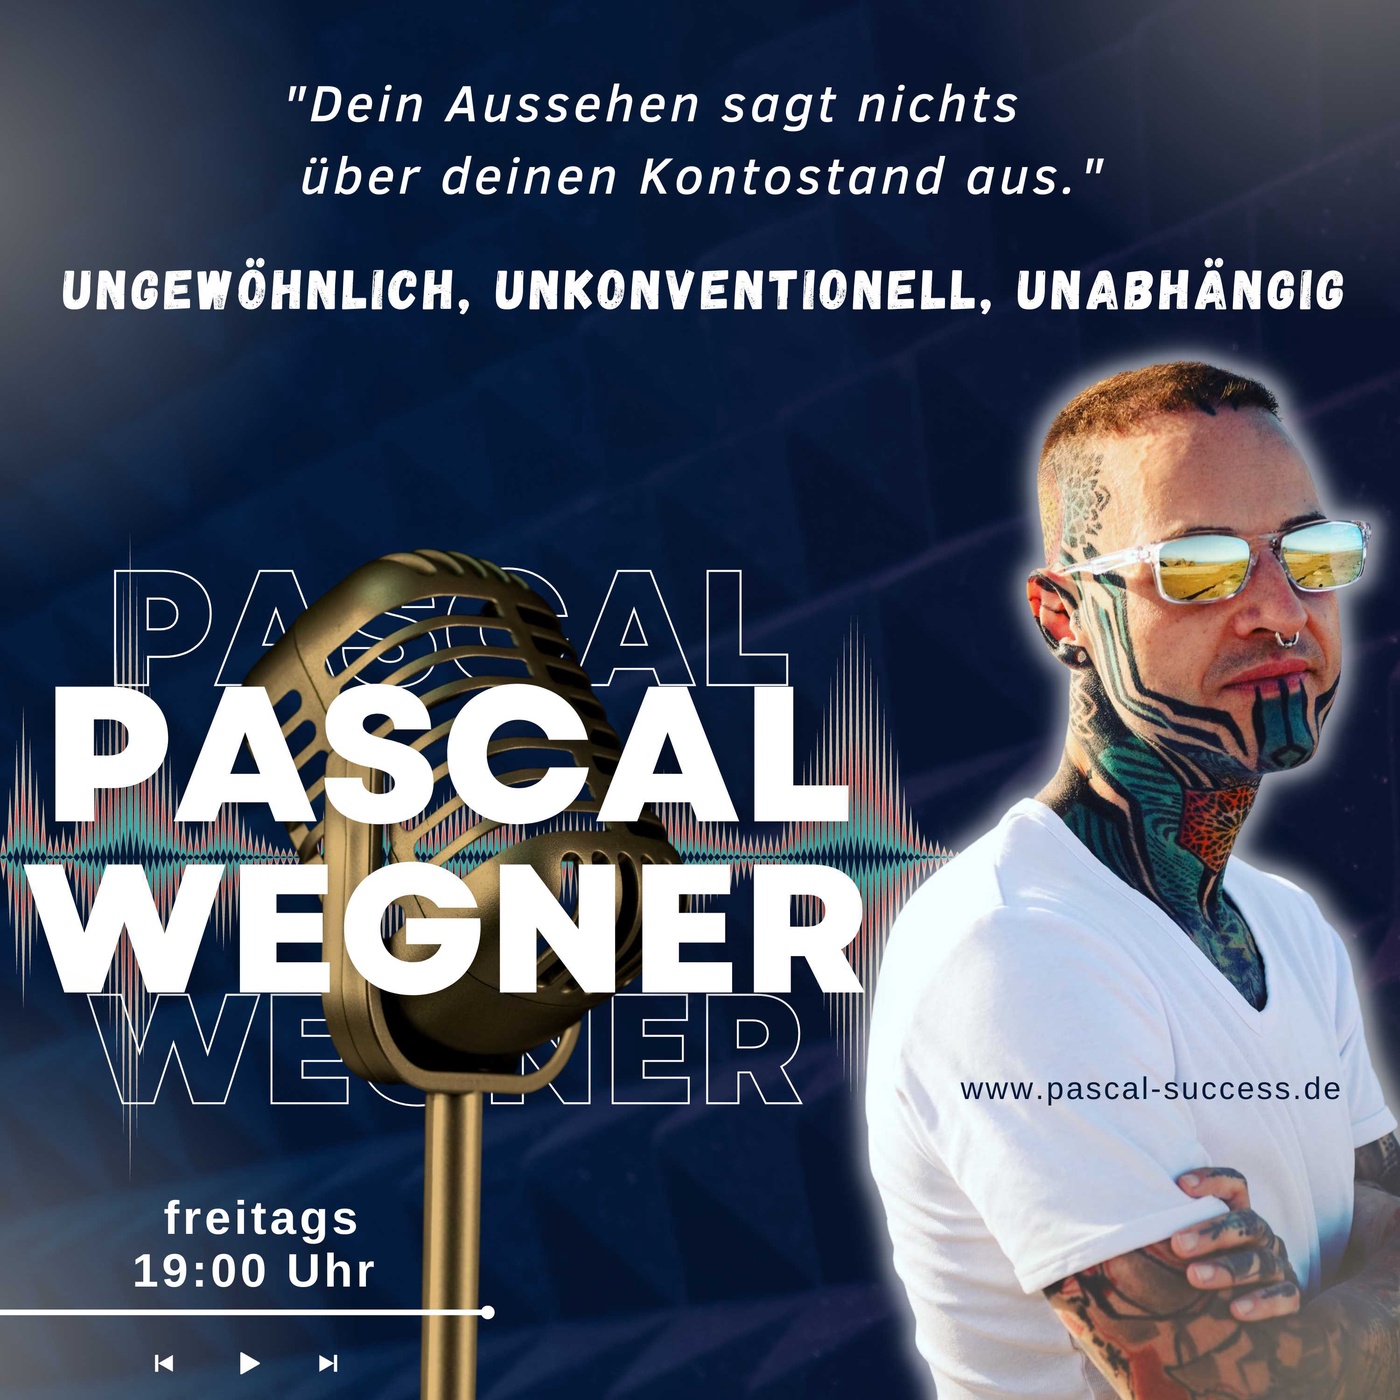 Pascal Wegner - ungewöhnlich, unkonventionell, unabhängig